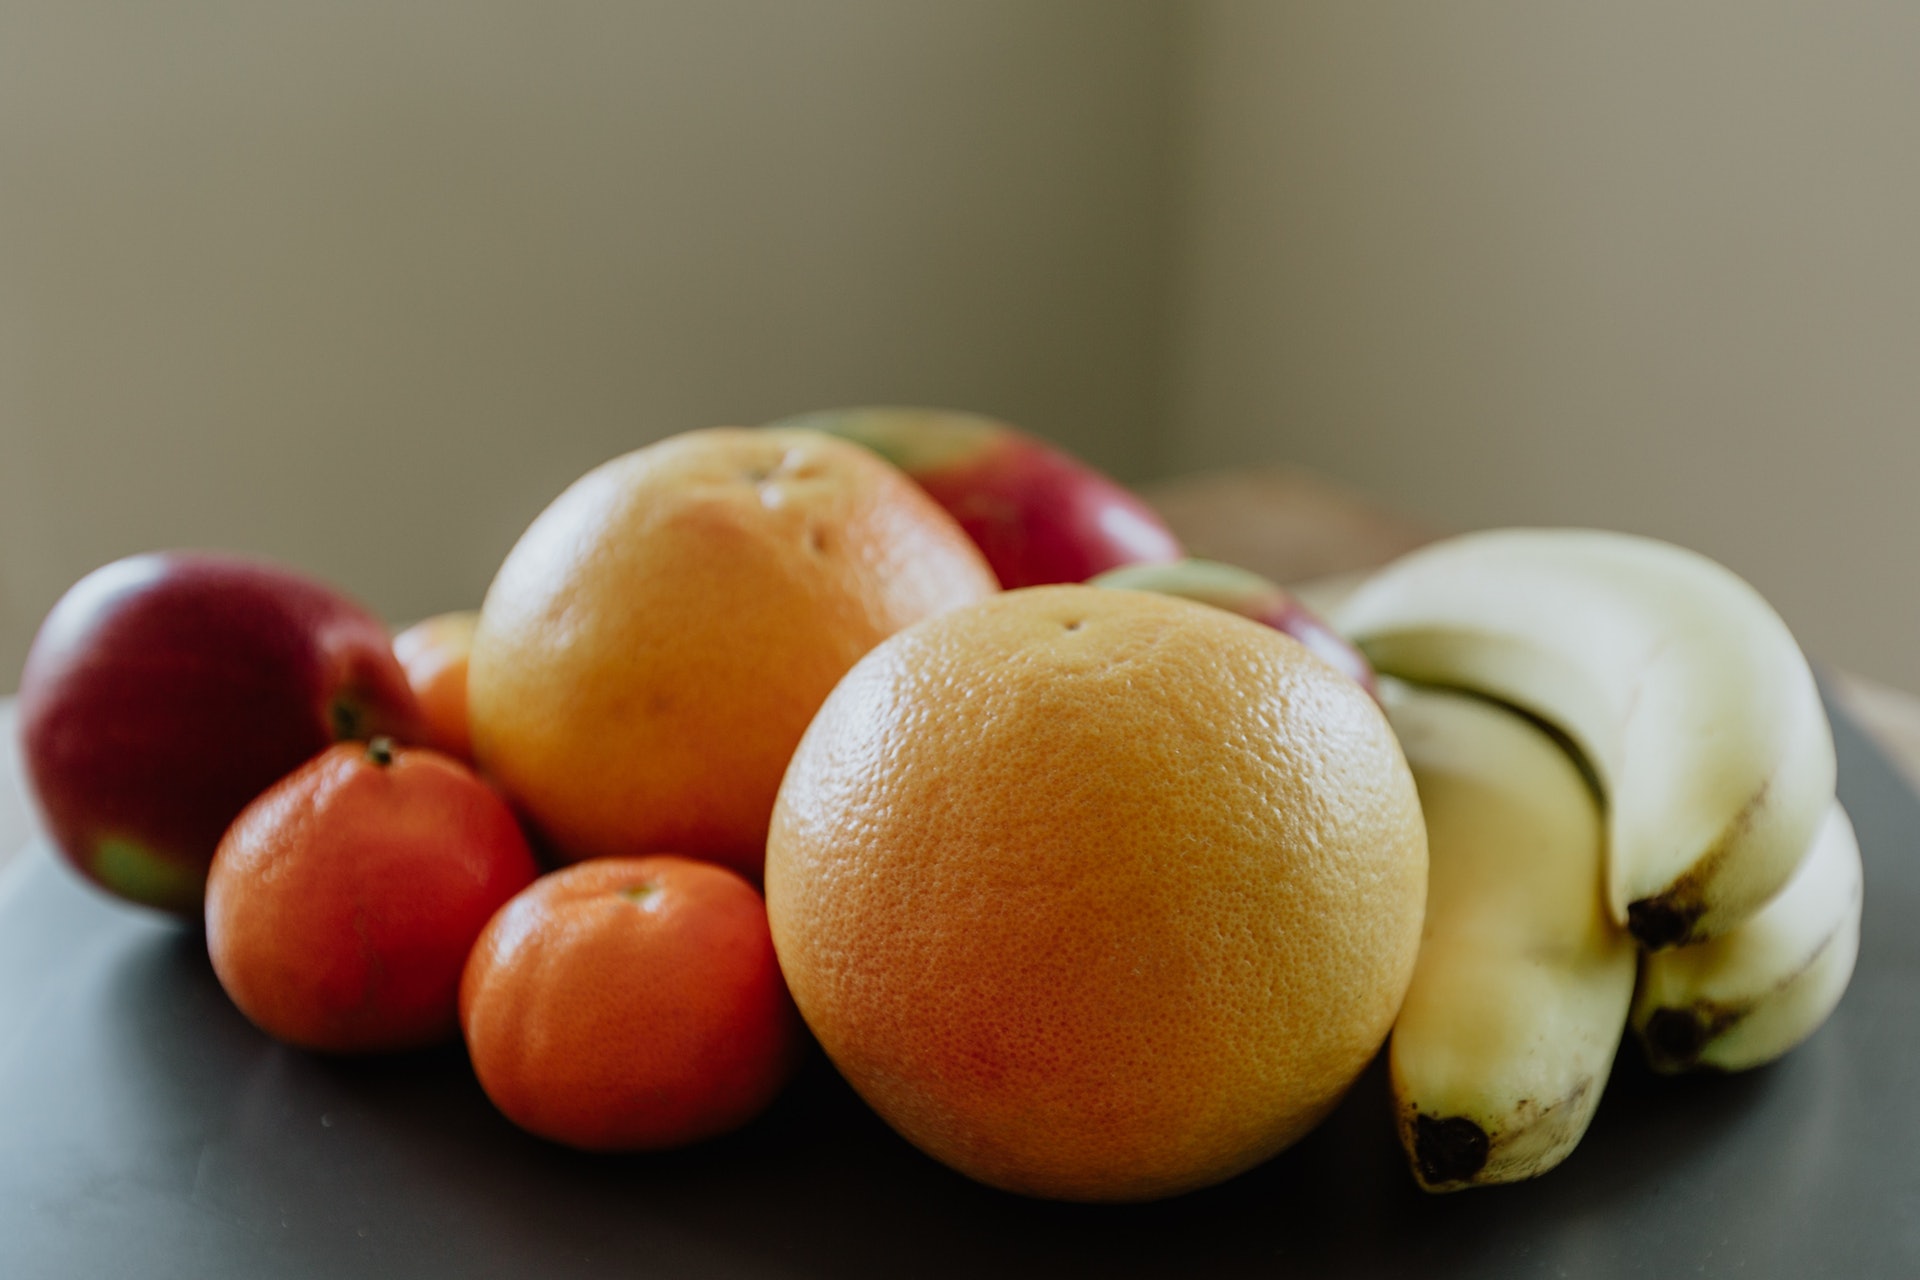 維生素C是對人體非常有益的營養，對保護眼睛健康亦大有幫助，橙就是其中一種含豐富維生素C的食物。（Christine Wehrmeier/unsplash）